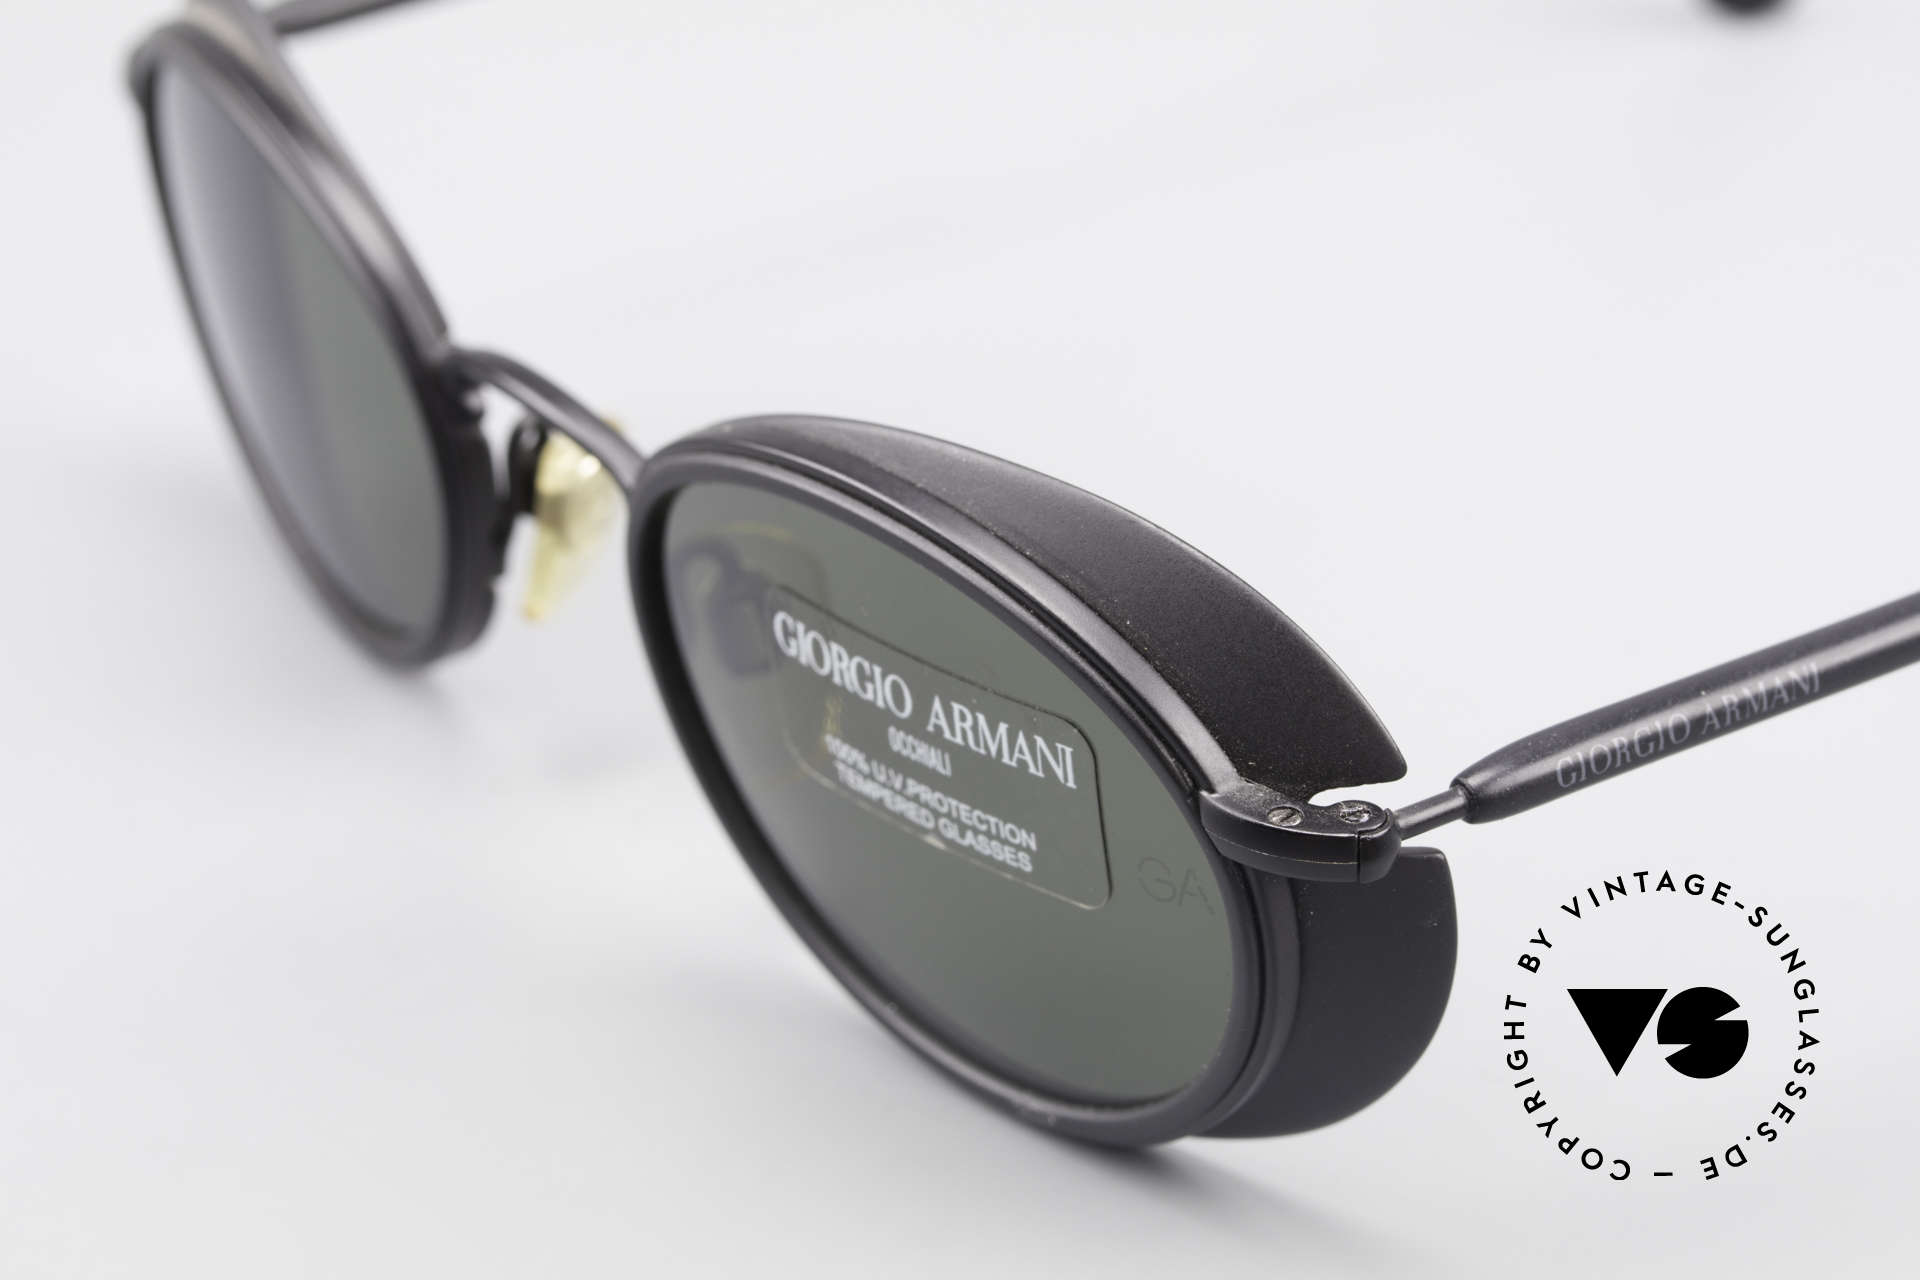 Sonnenbrillen Armani 666 Sonnenschutz Blenden Brille